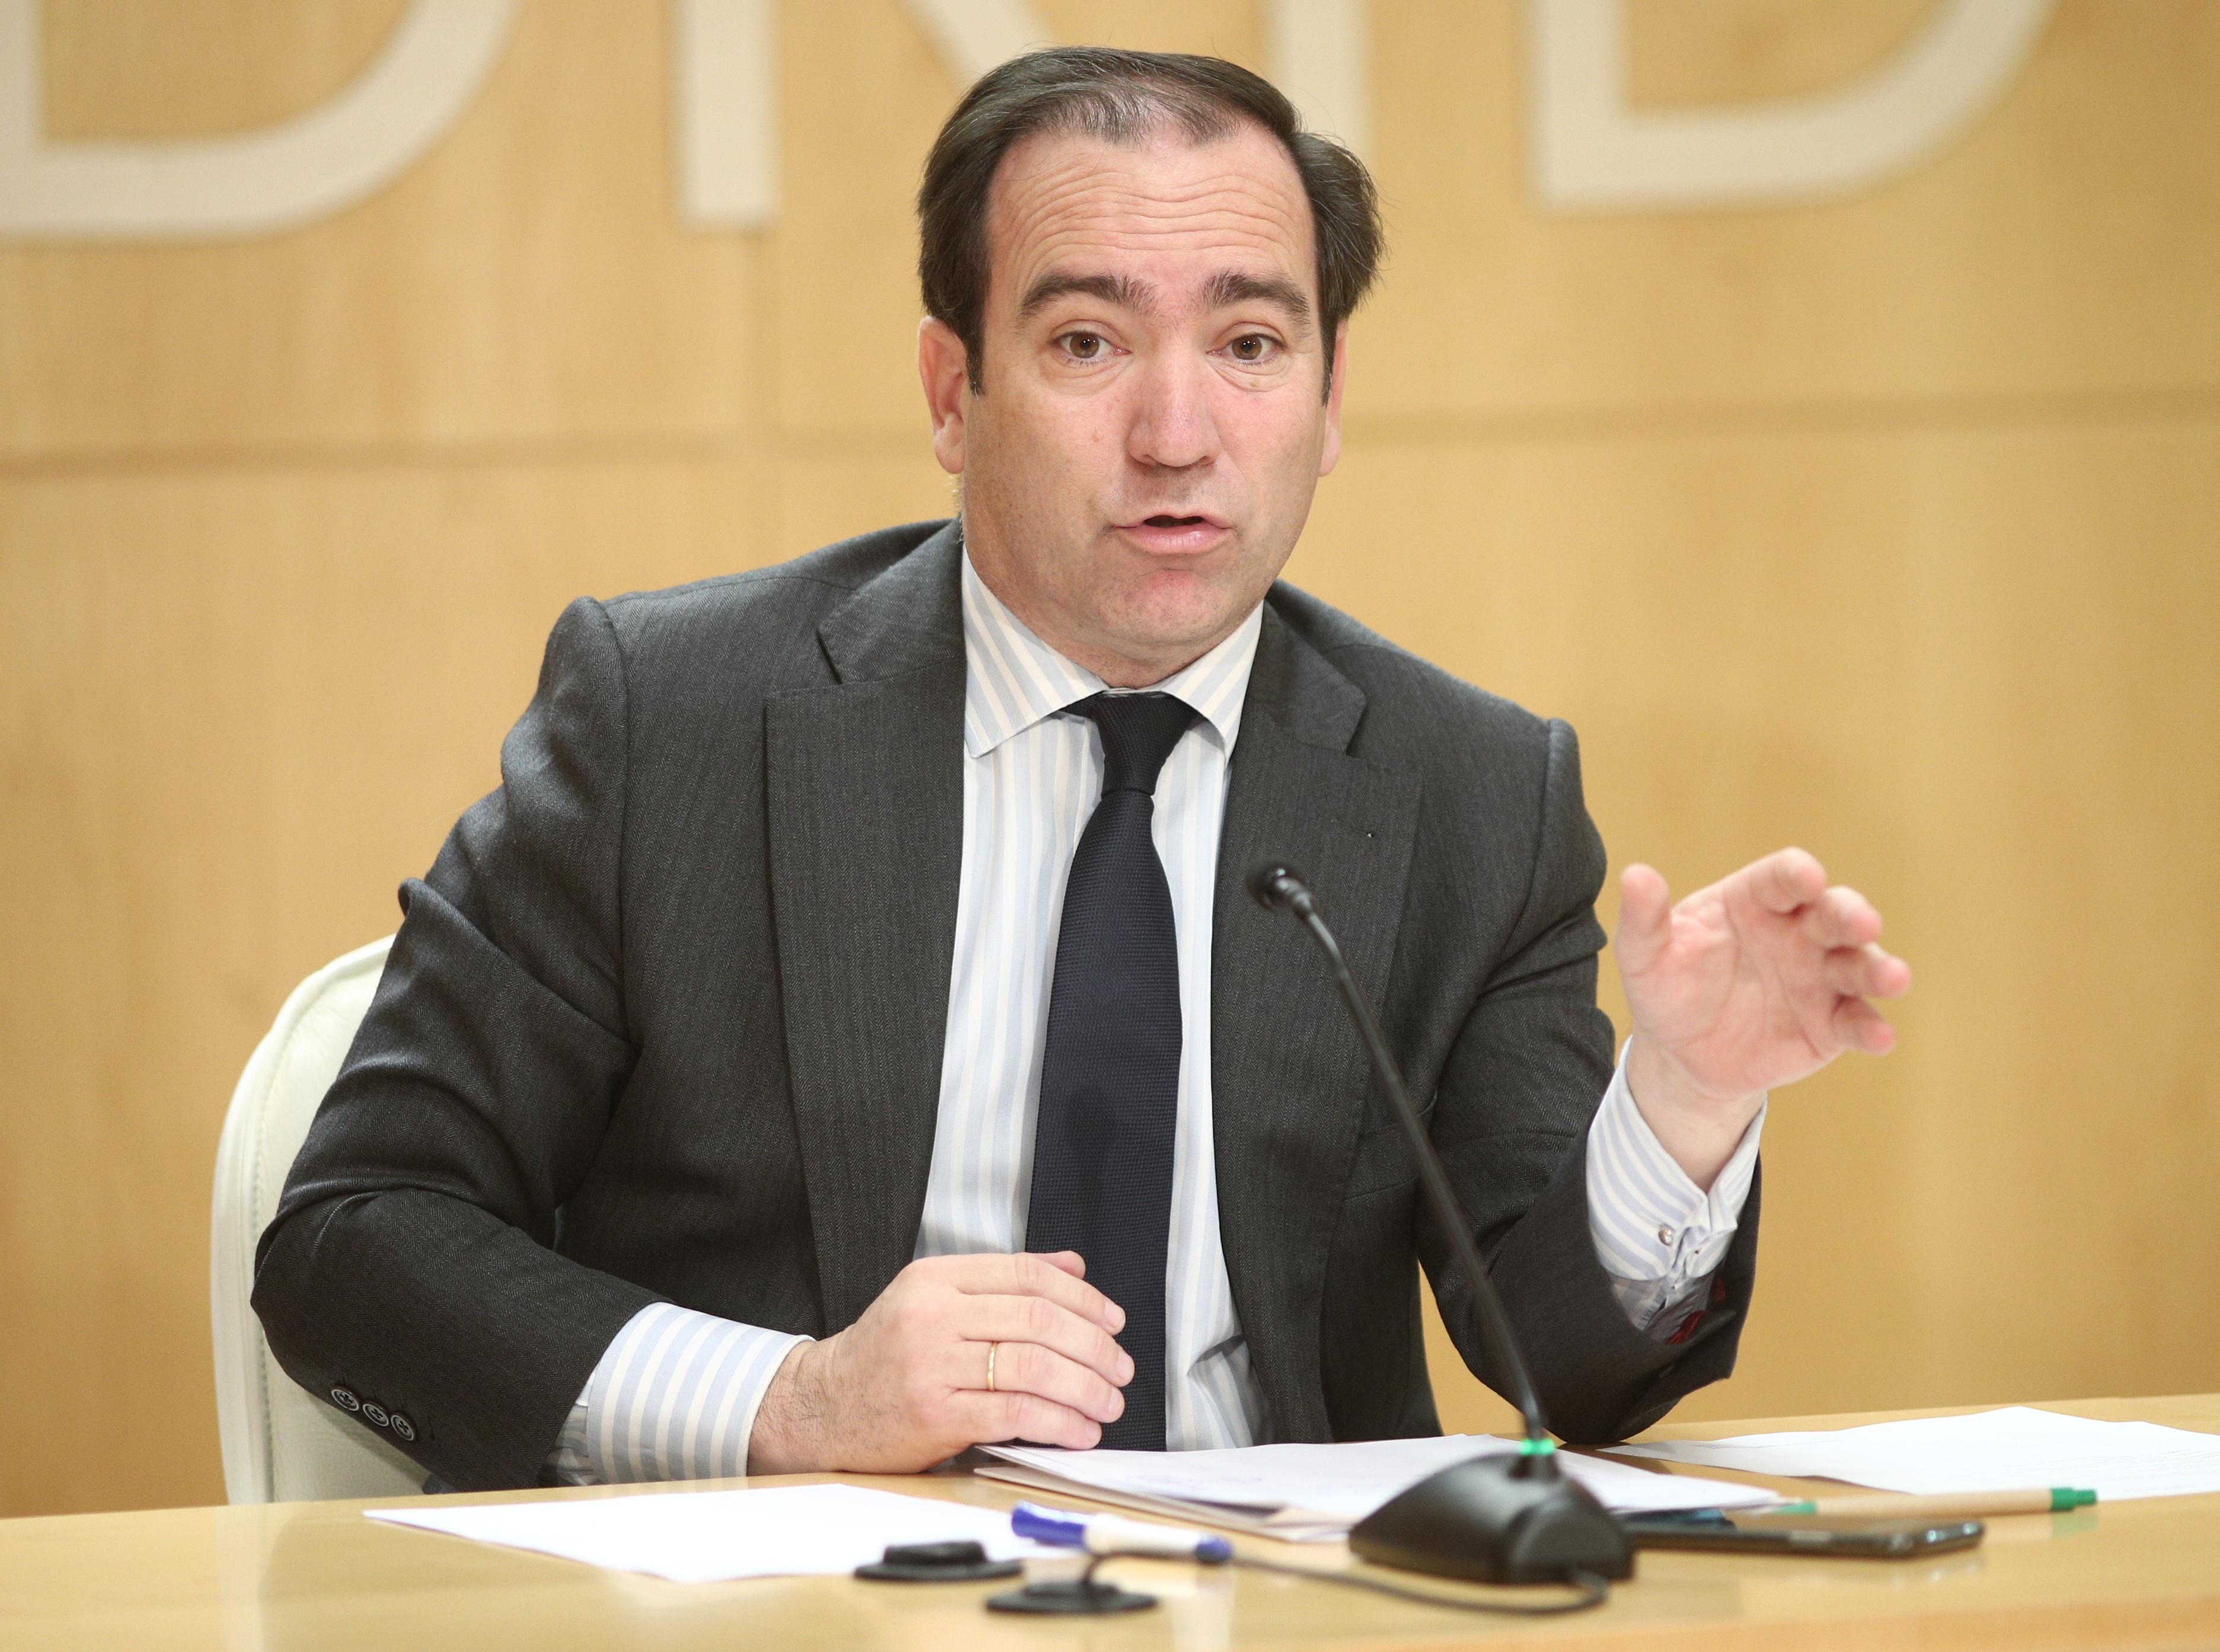 El delegado de Medio Ambiente y Movilidad de Madrid, Borja Carabante durante su intervención. Fuente: Europa Press.